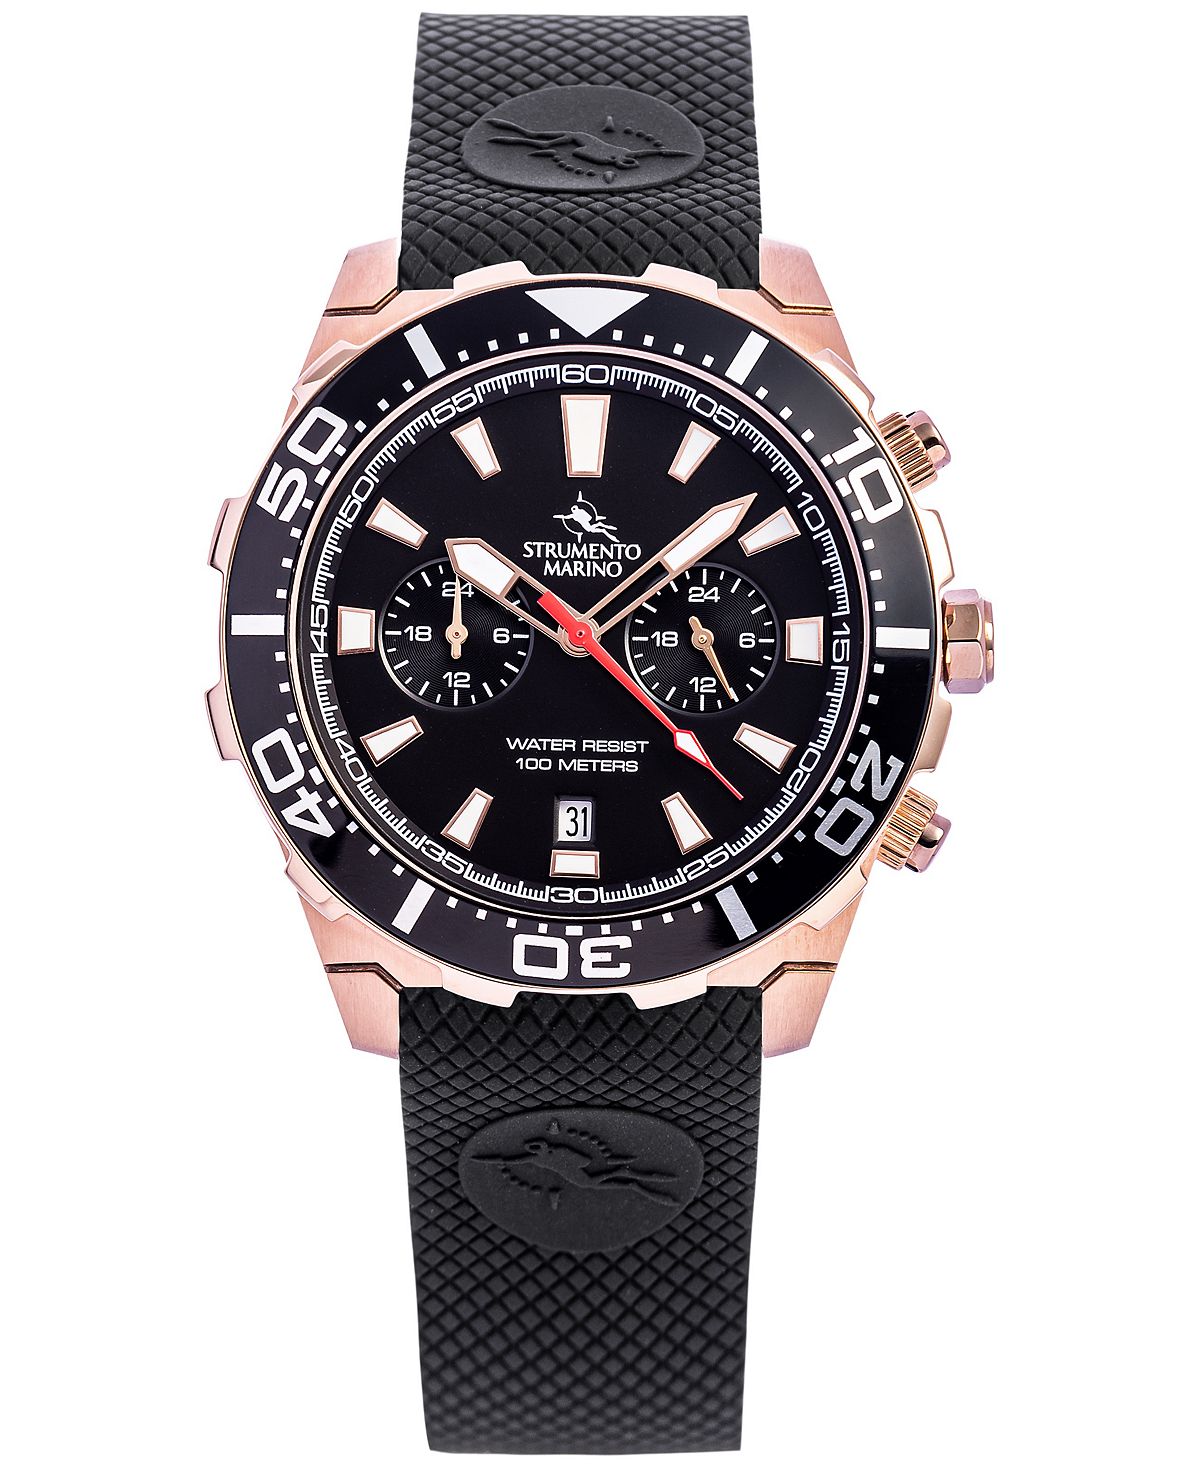 Мужские часы Skipper с двумя часовыми поясами, черный силиконовый ремешок, 44 мм Strumento Marino lee cooper women s stainless steel rose gold bracelet lc b 01248 440